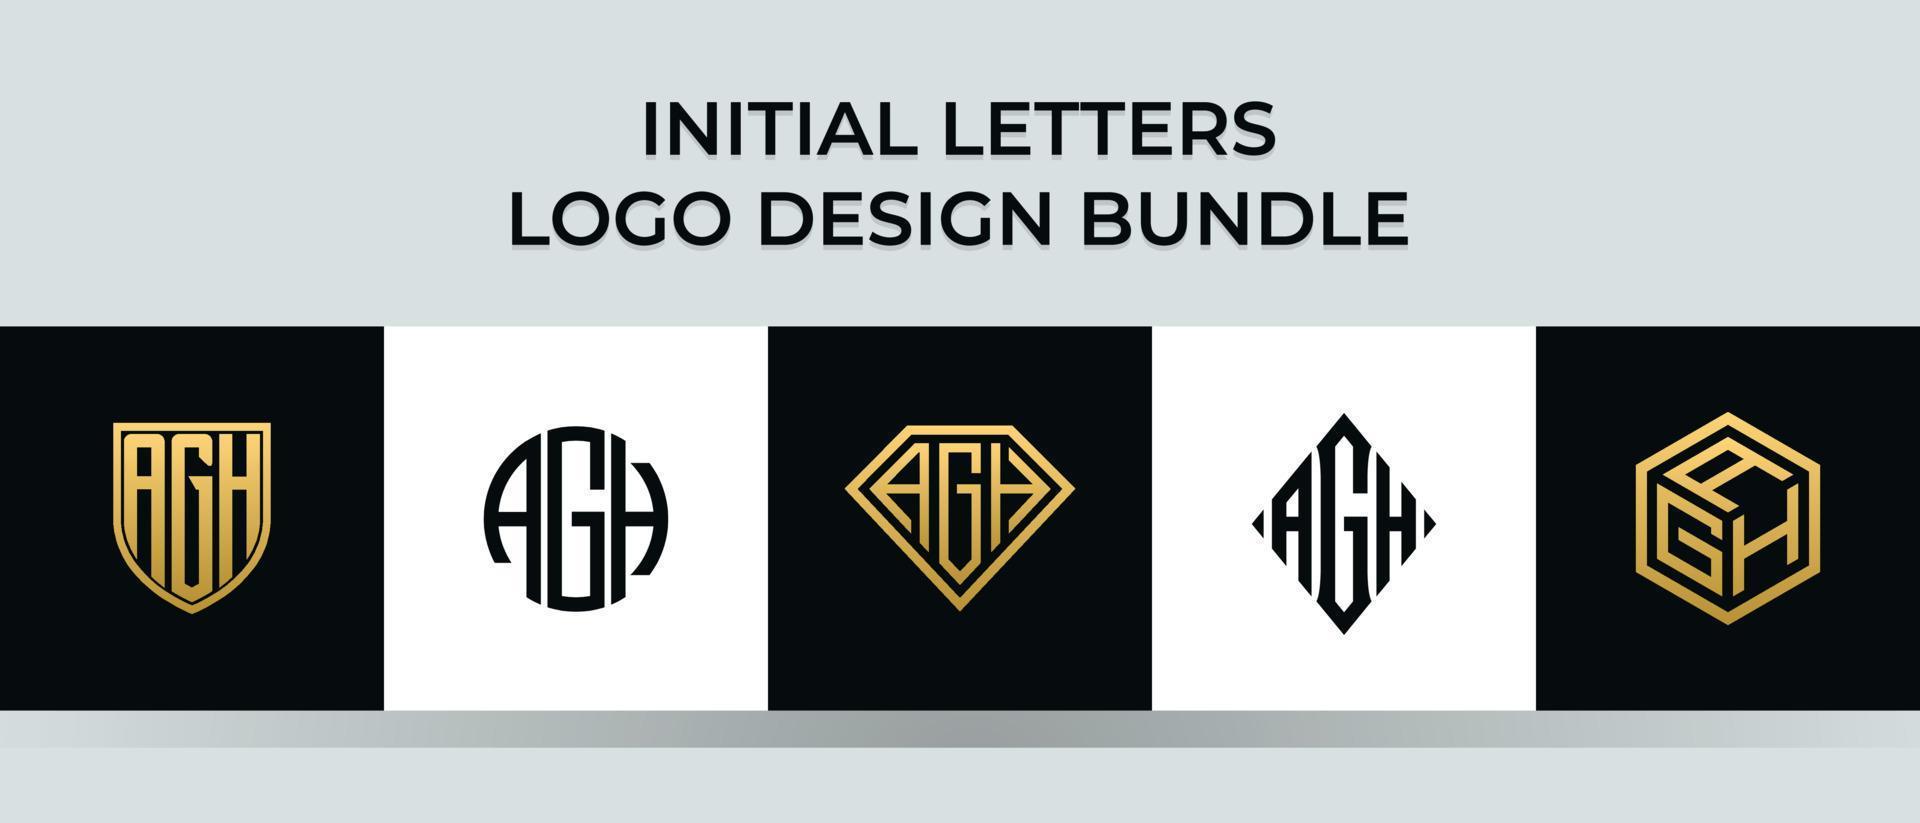 Anfangsbuchstaben agh Logo Designs Bundle vektor